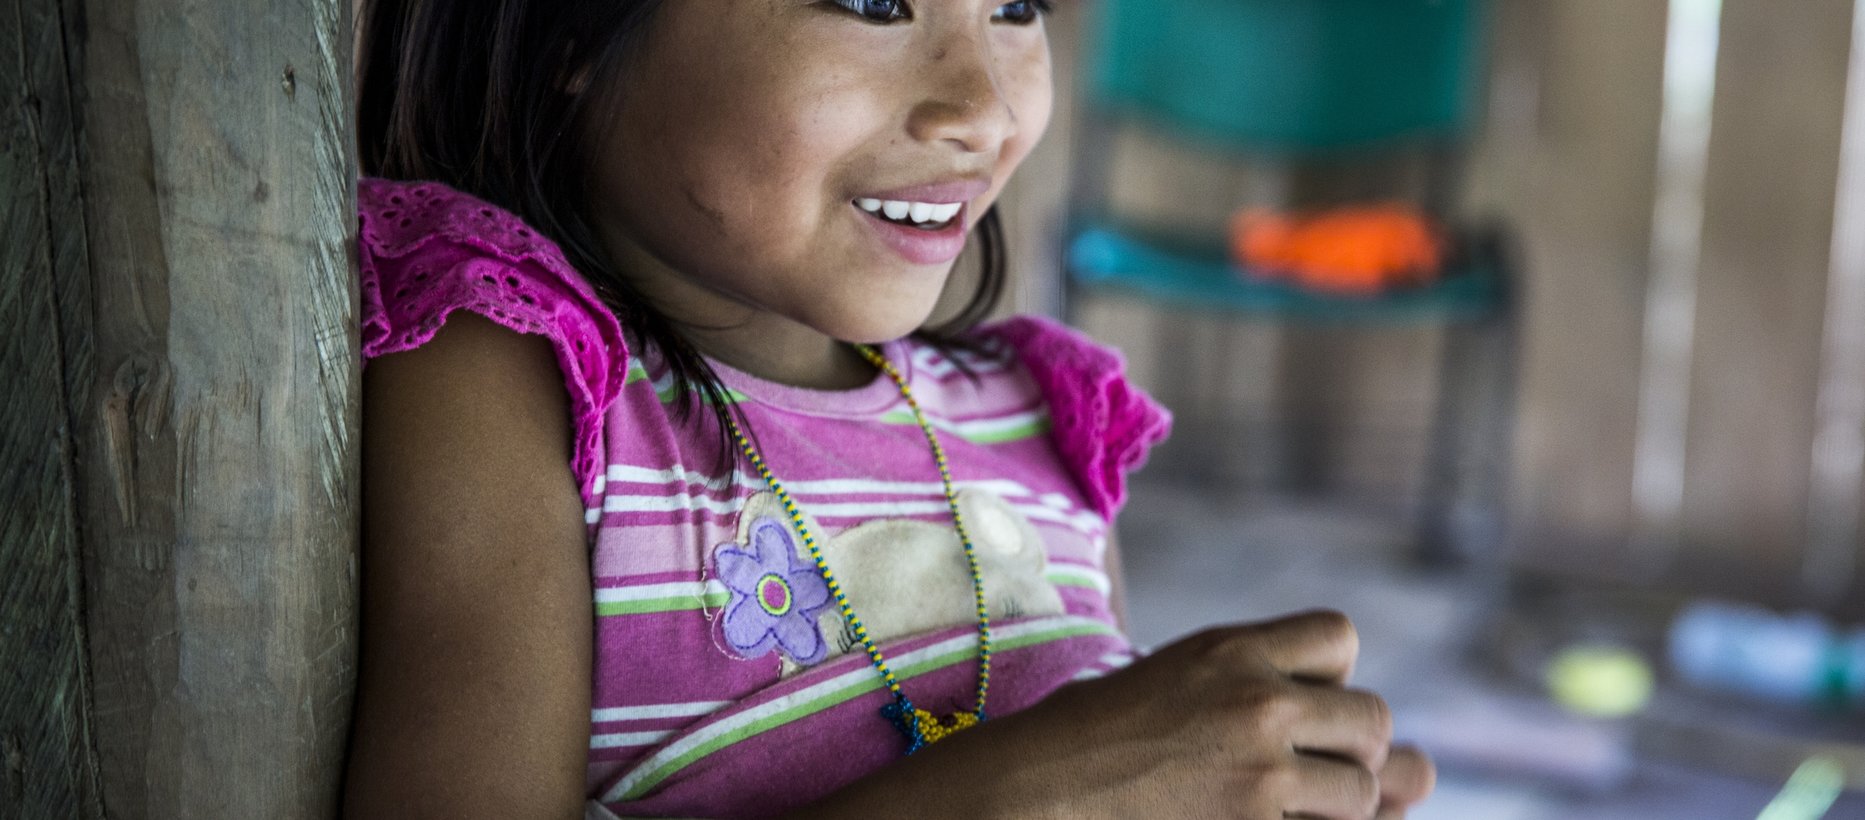 Lapsi Kolumbiassa kuva: Meri Koutaniemi